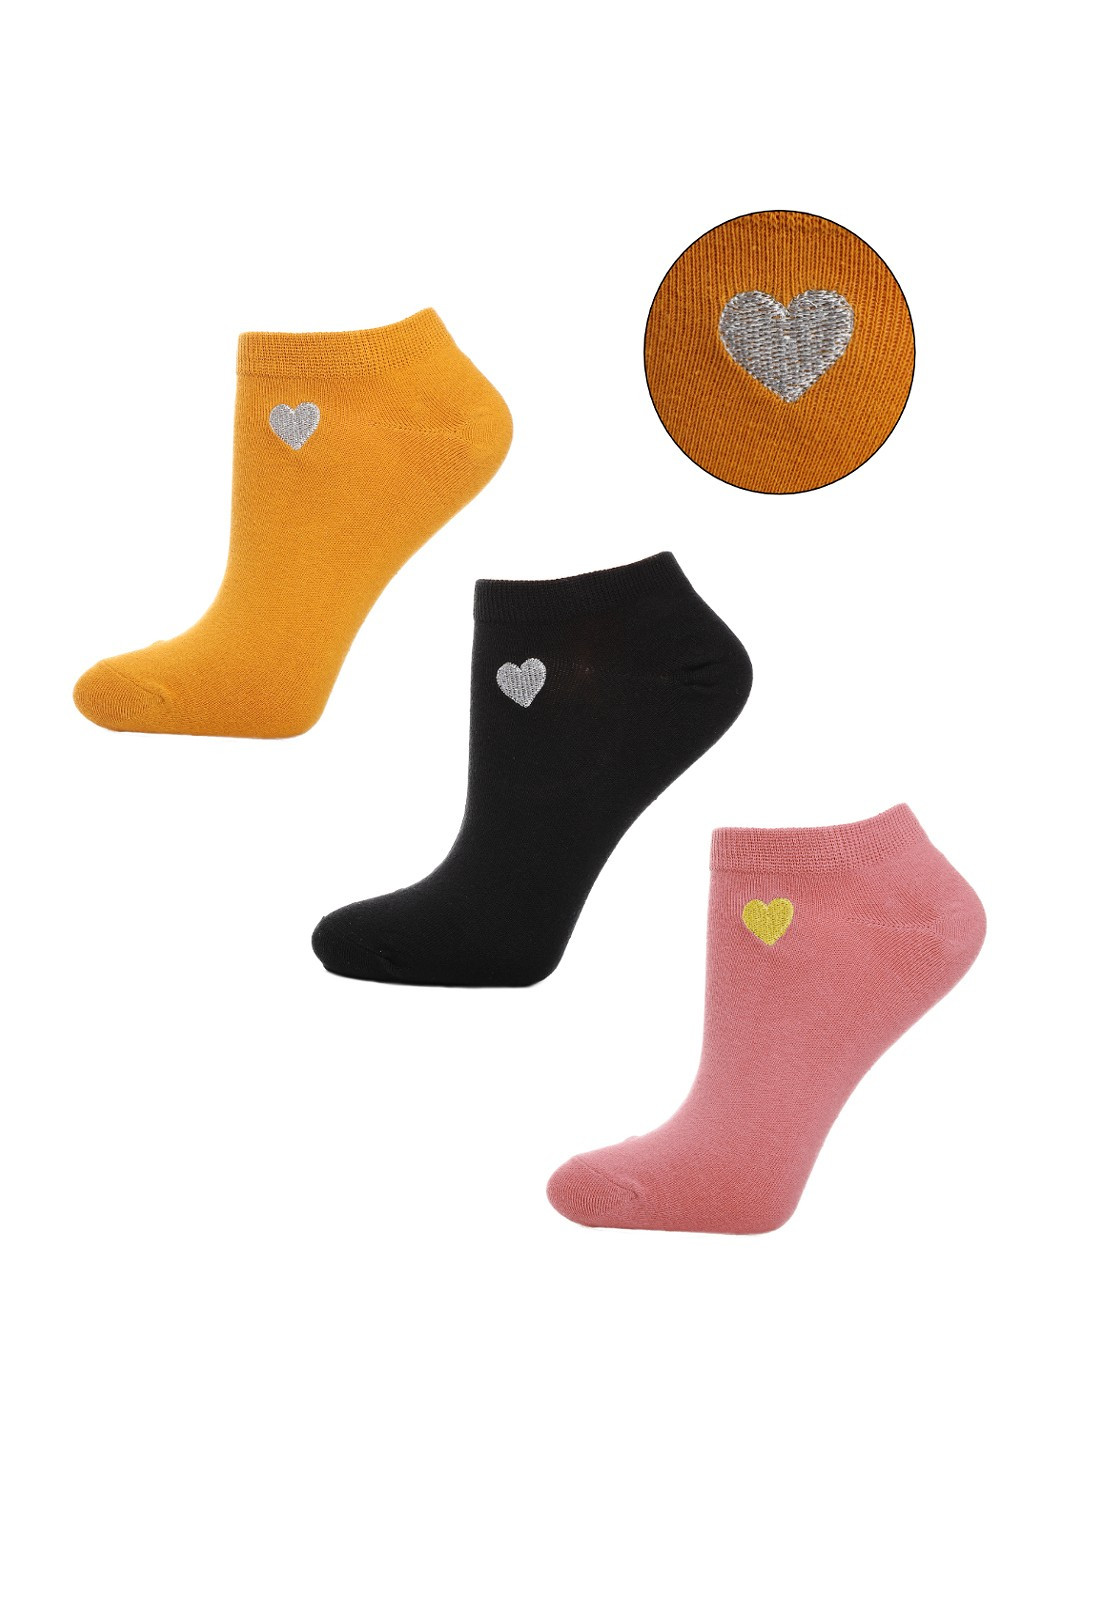 Dámské ponožky Moraj CSD240-052 Srdce A'3 35-41 směs barev 38-41